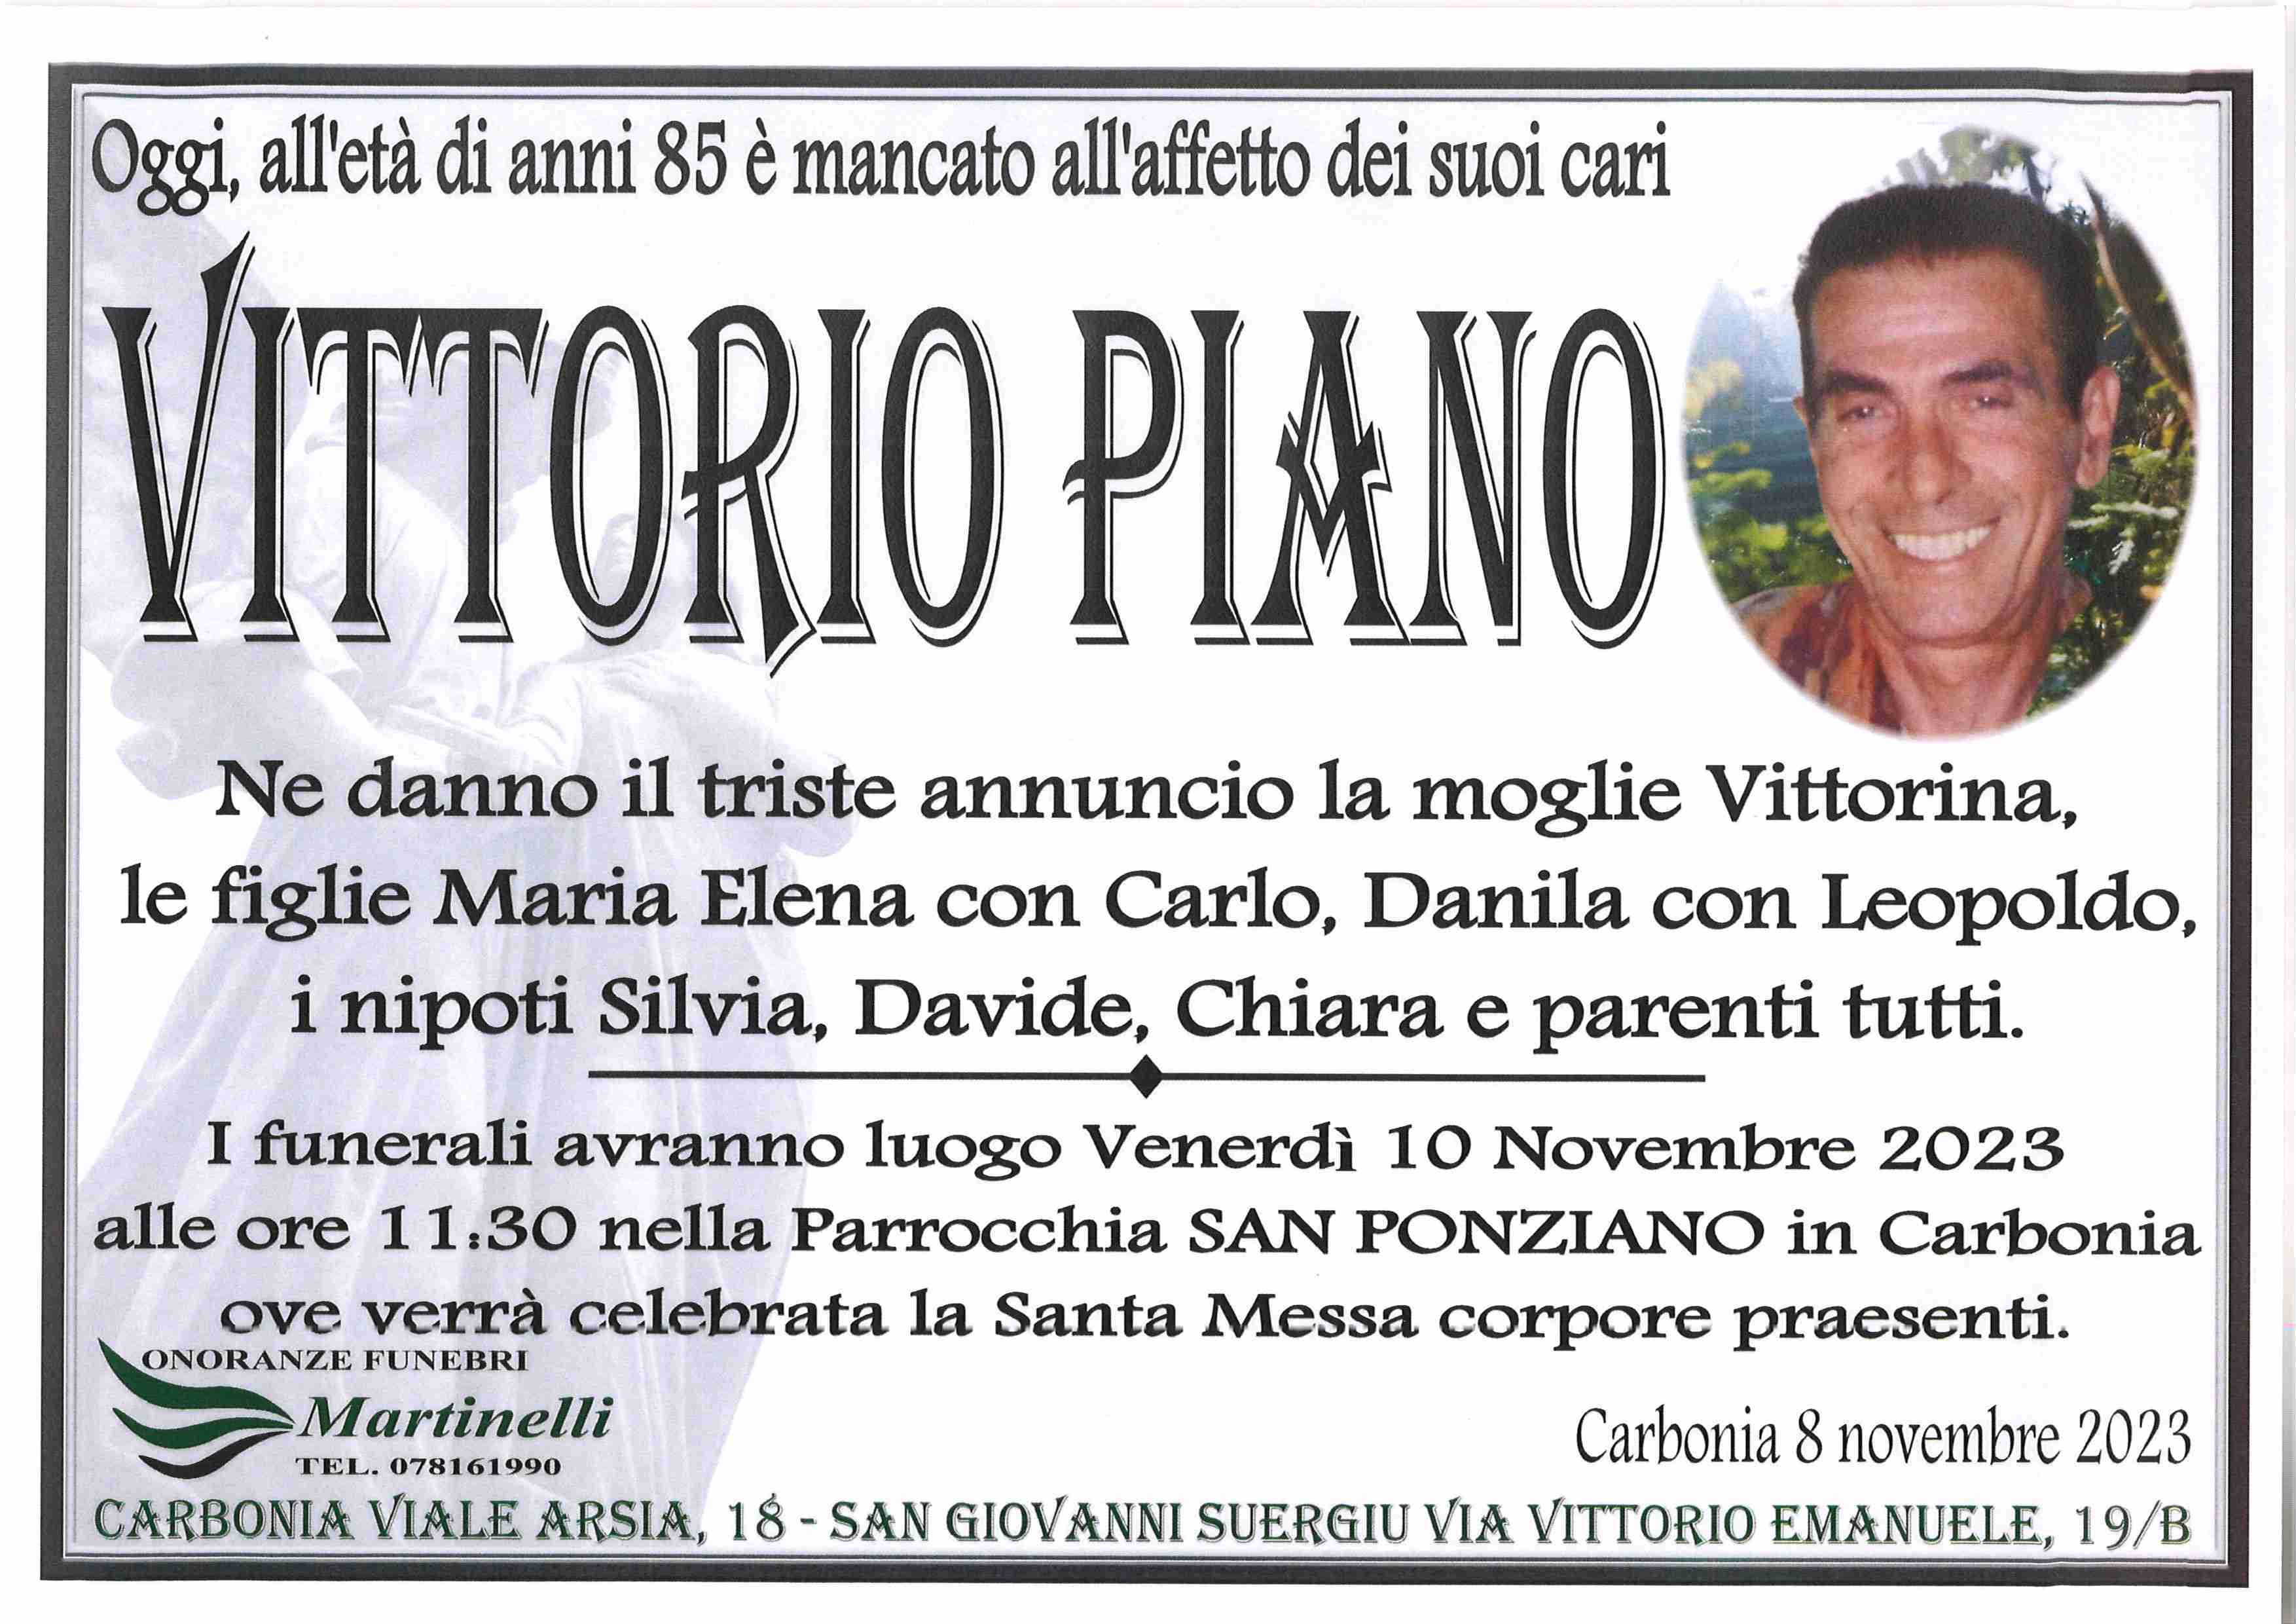 Vittorio Piano